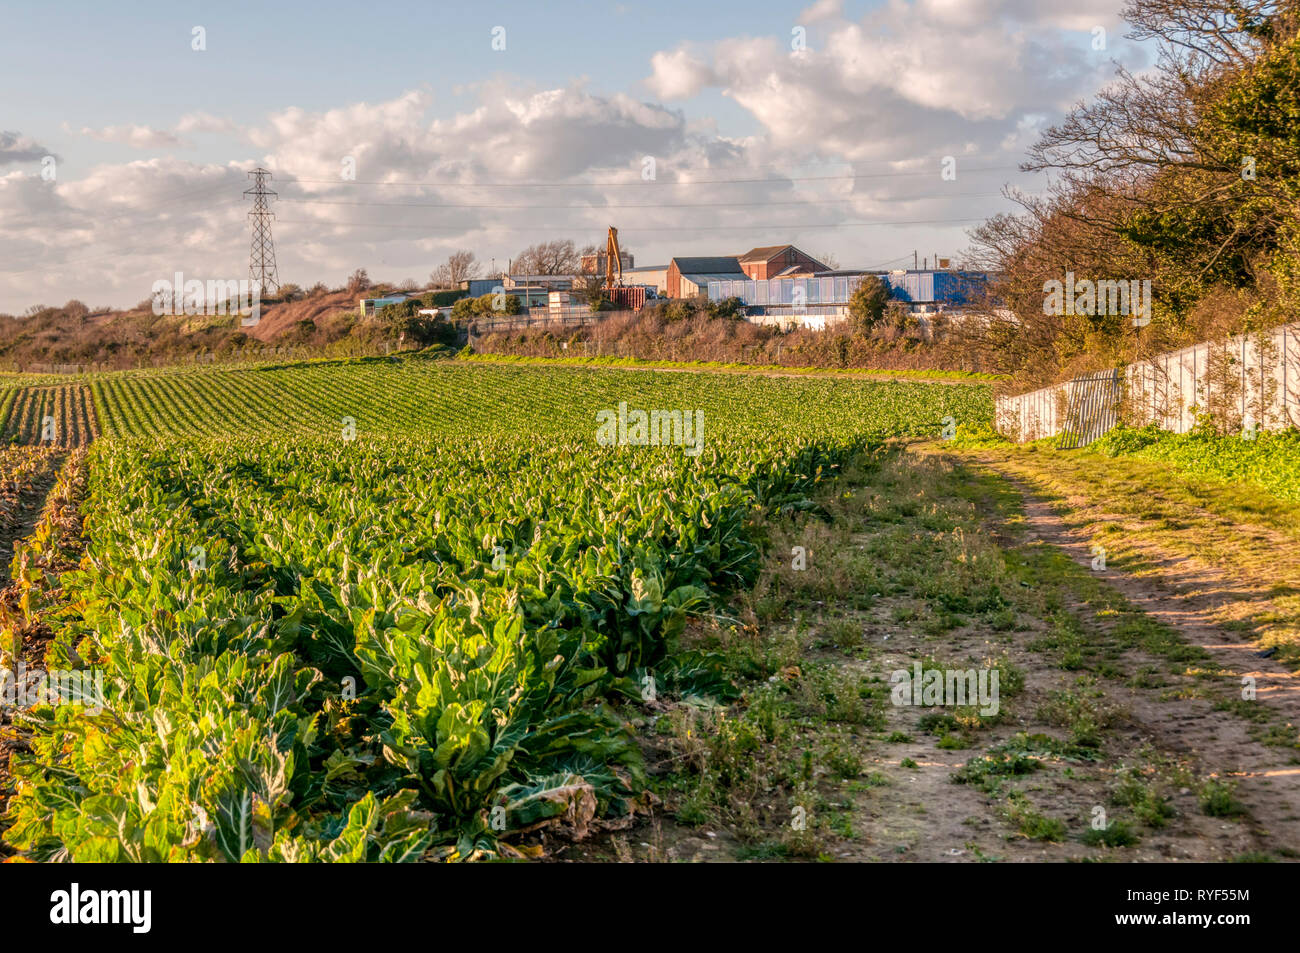 La banlieue urbaine, la frontière entre la zone urbaine et de terres agricoles sur le bord de Broadstairs, Kent. Banque D'Images